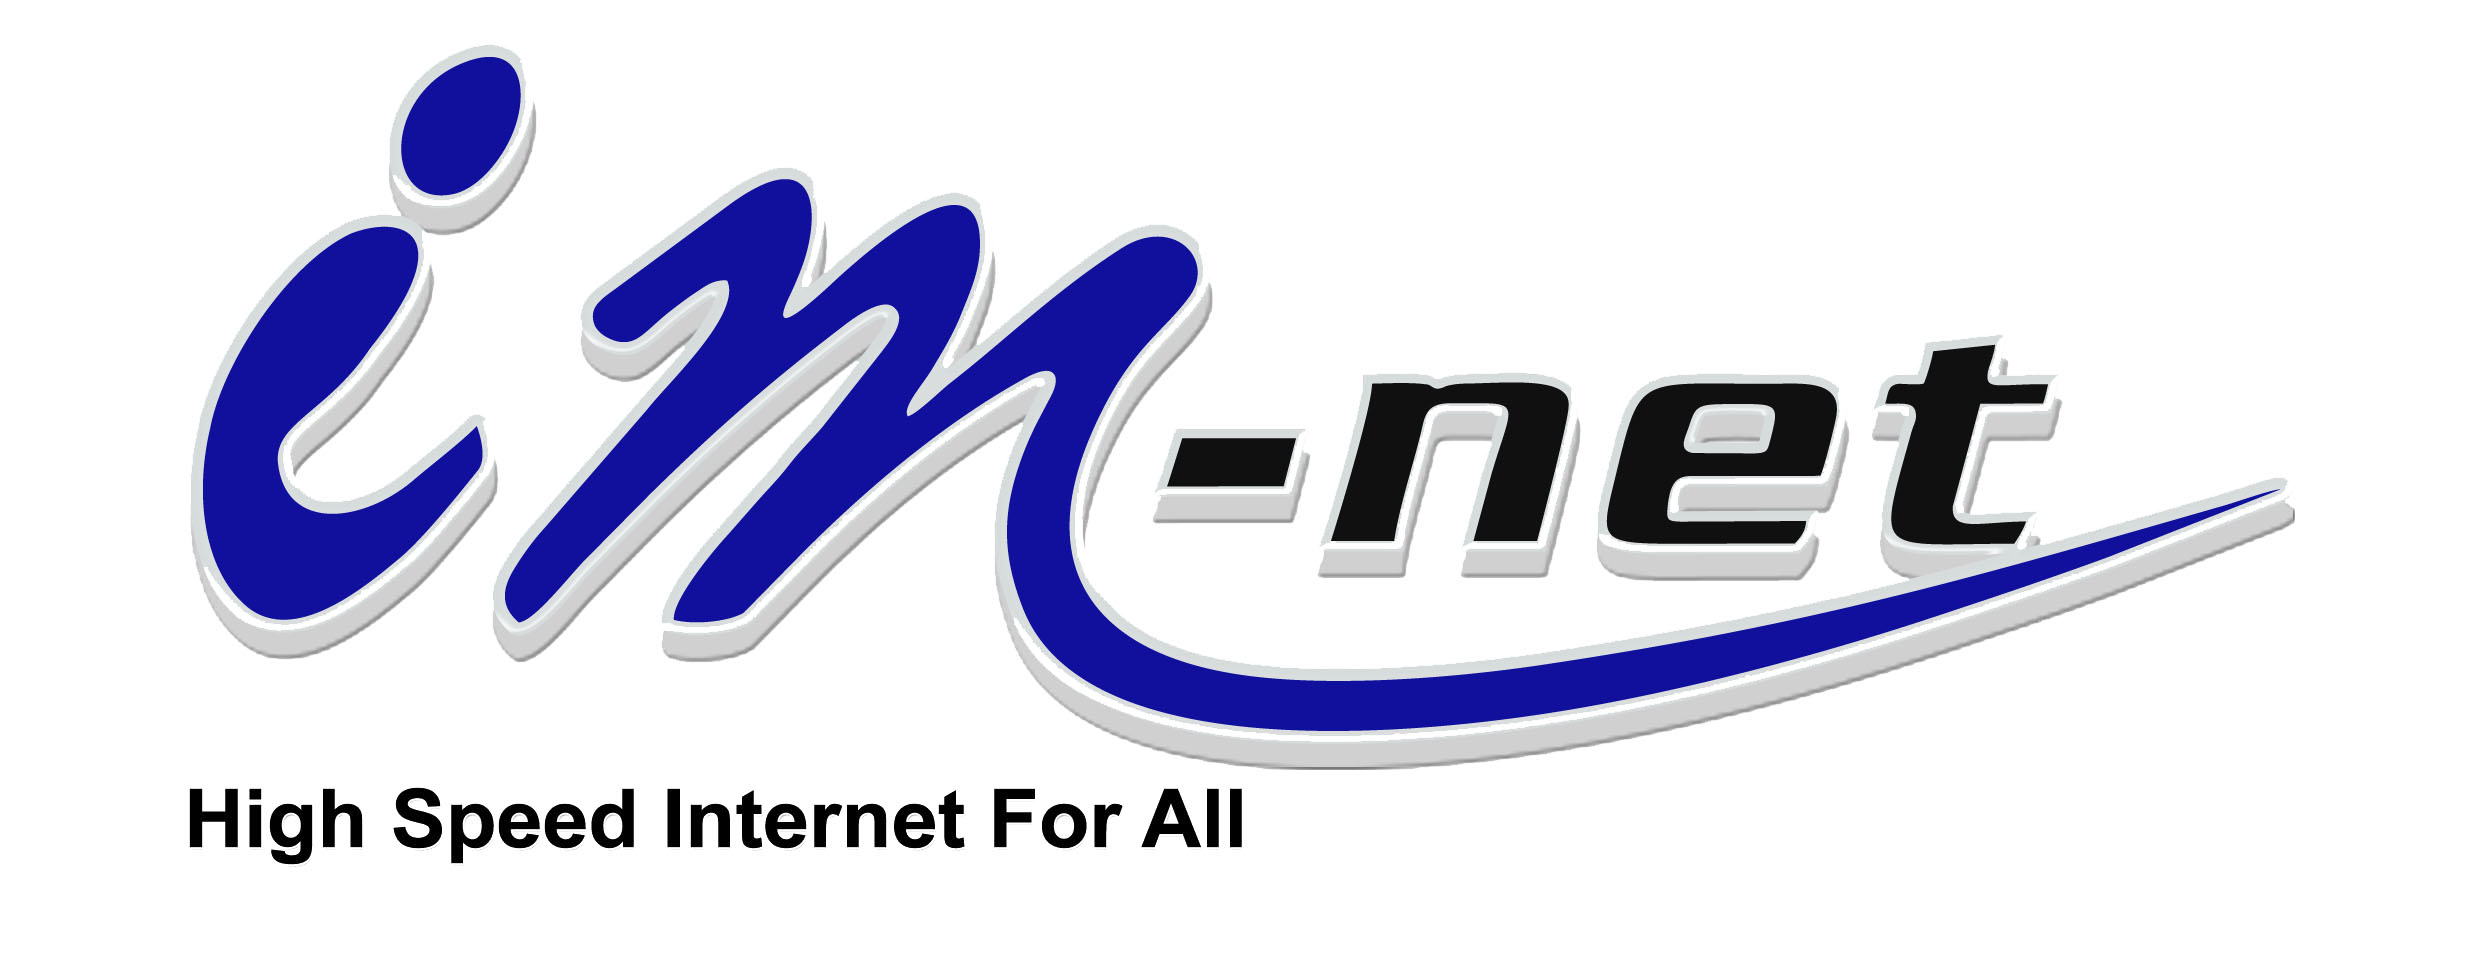 Internet Maekhong Network Co., Ltd.